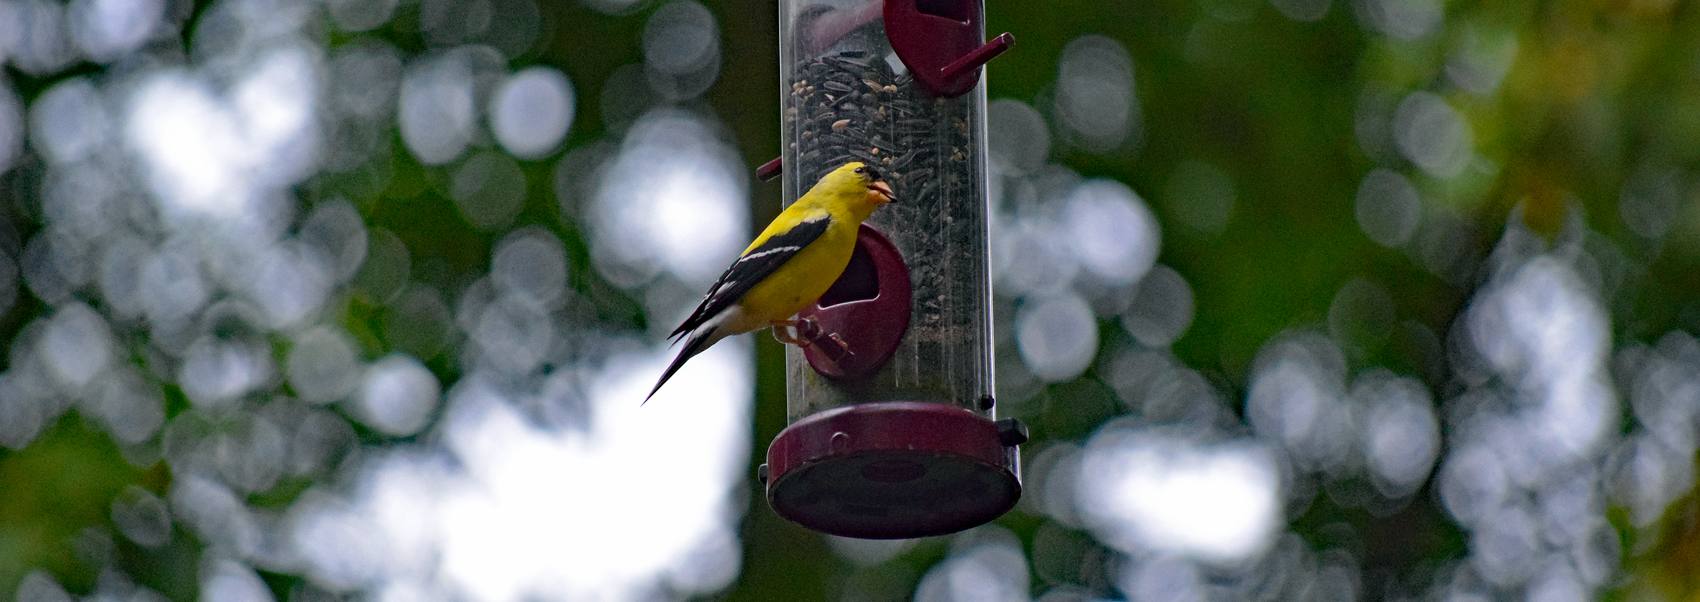 Goldfinch feeds on Hidden Pond's bird feeder